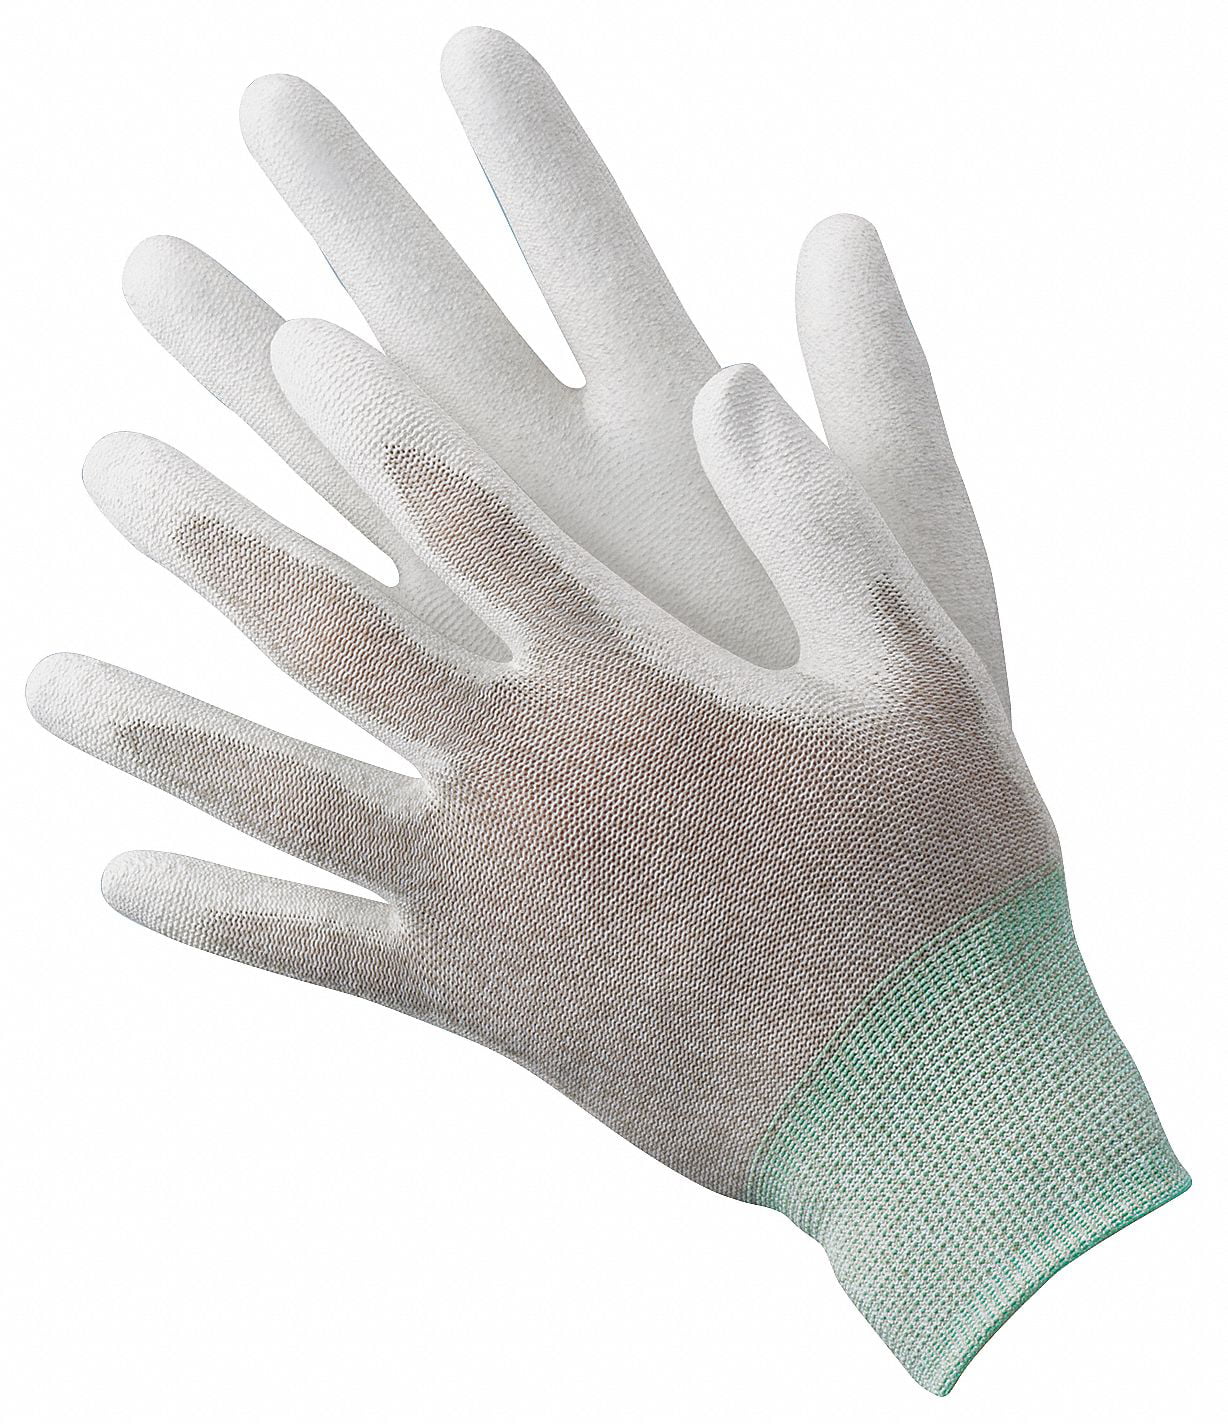 CONDOR 19L041 Antistatic Glove,L,Nylon/Copper Fiber,PR 